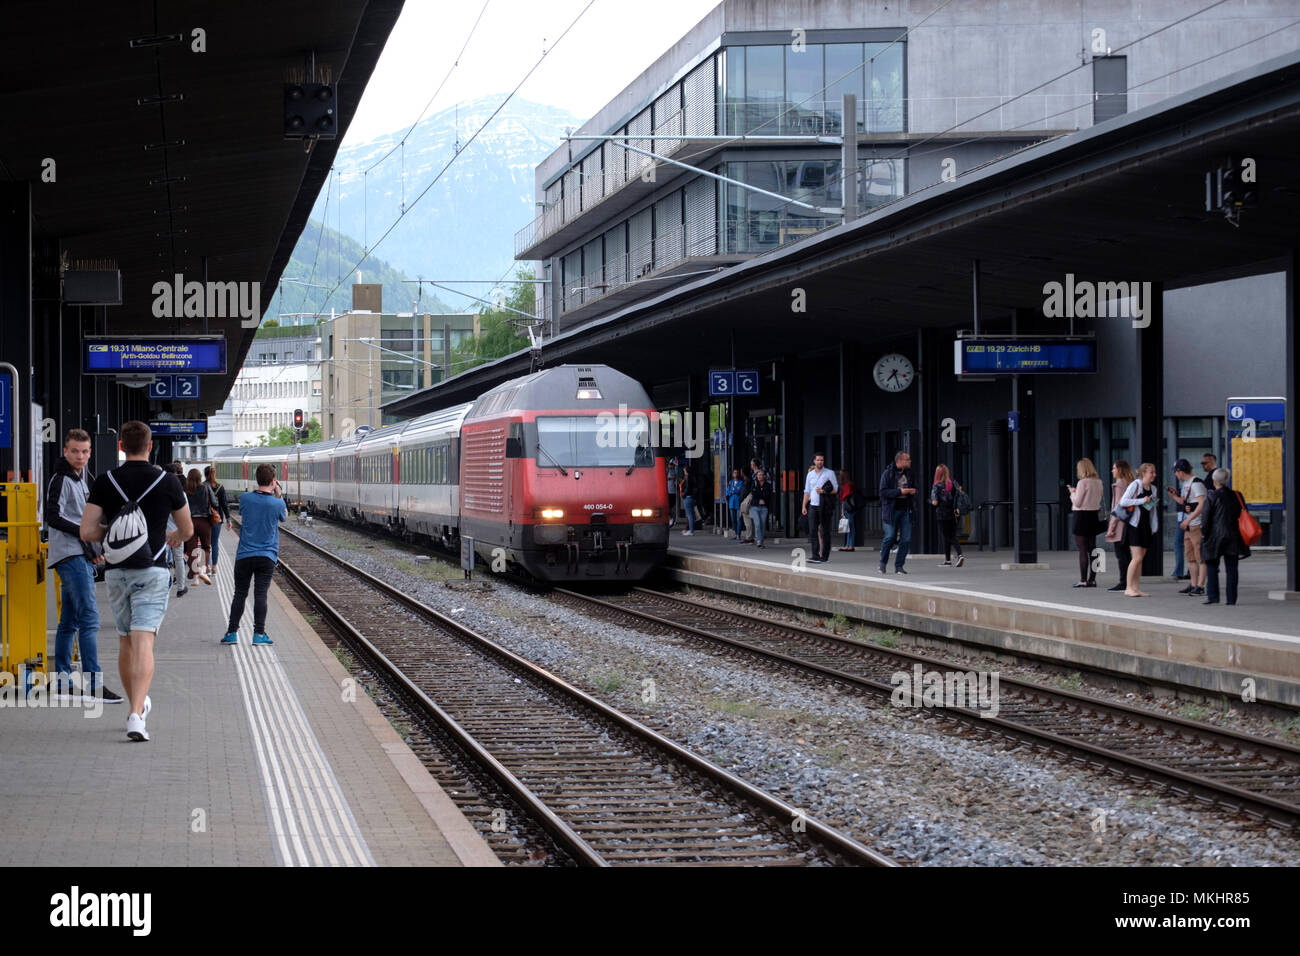 Zug Bahnof Bahnhof Zug, Schweiz, Europa Stockfotografie - Alamy